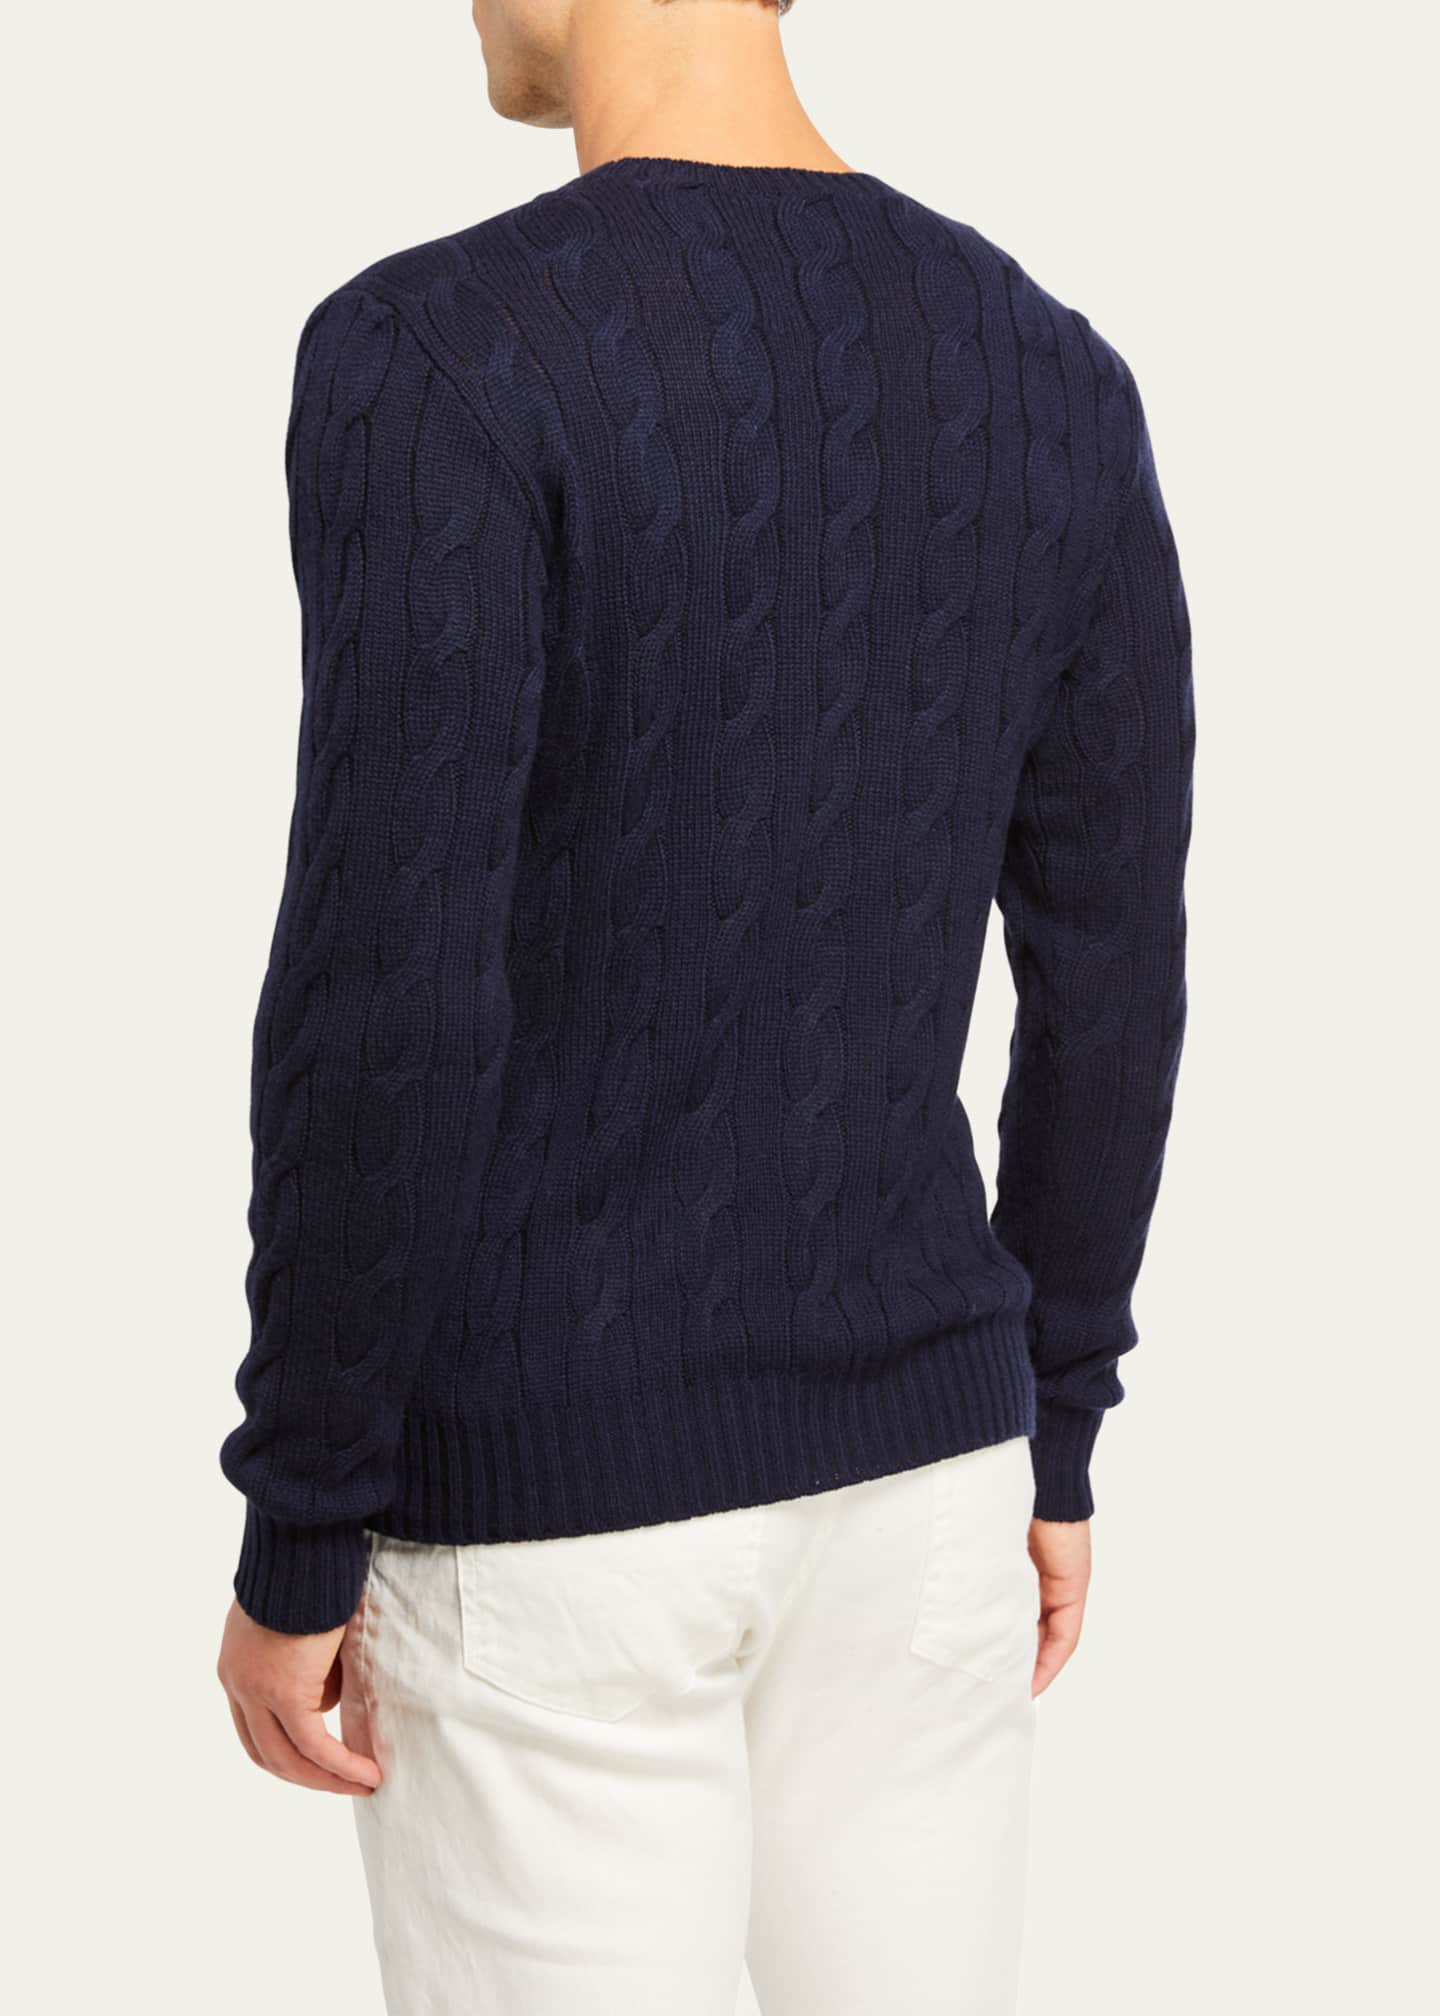 Ralph Lauren Purple Label Cashmere Cable-Knit Crewneck Sweater, Navy ...